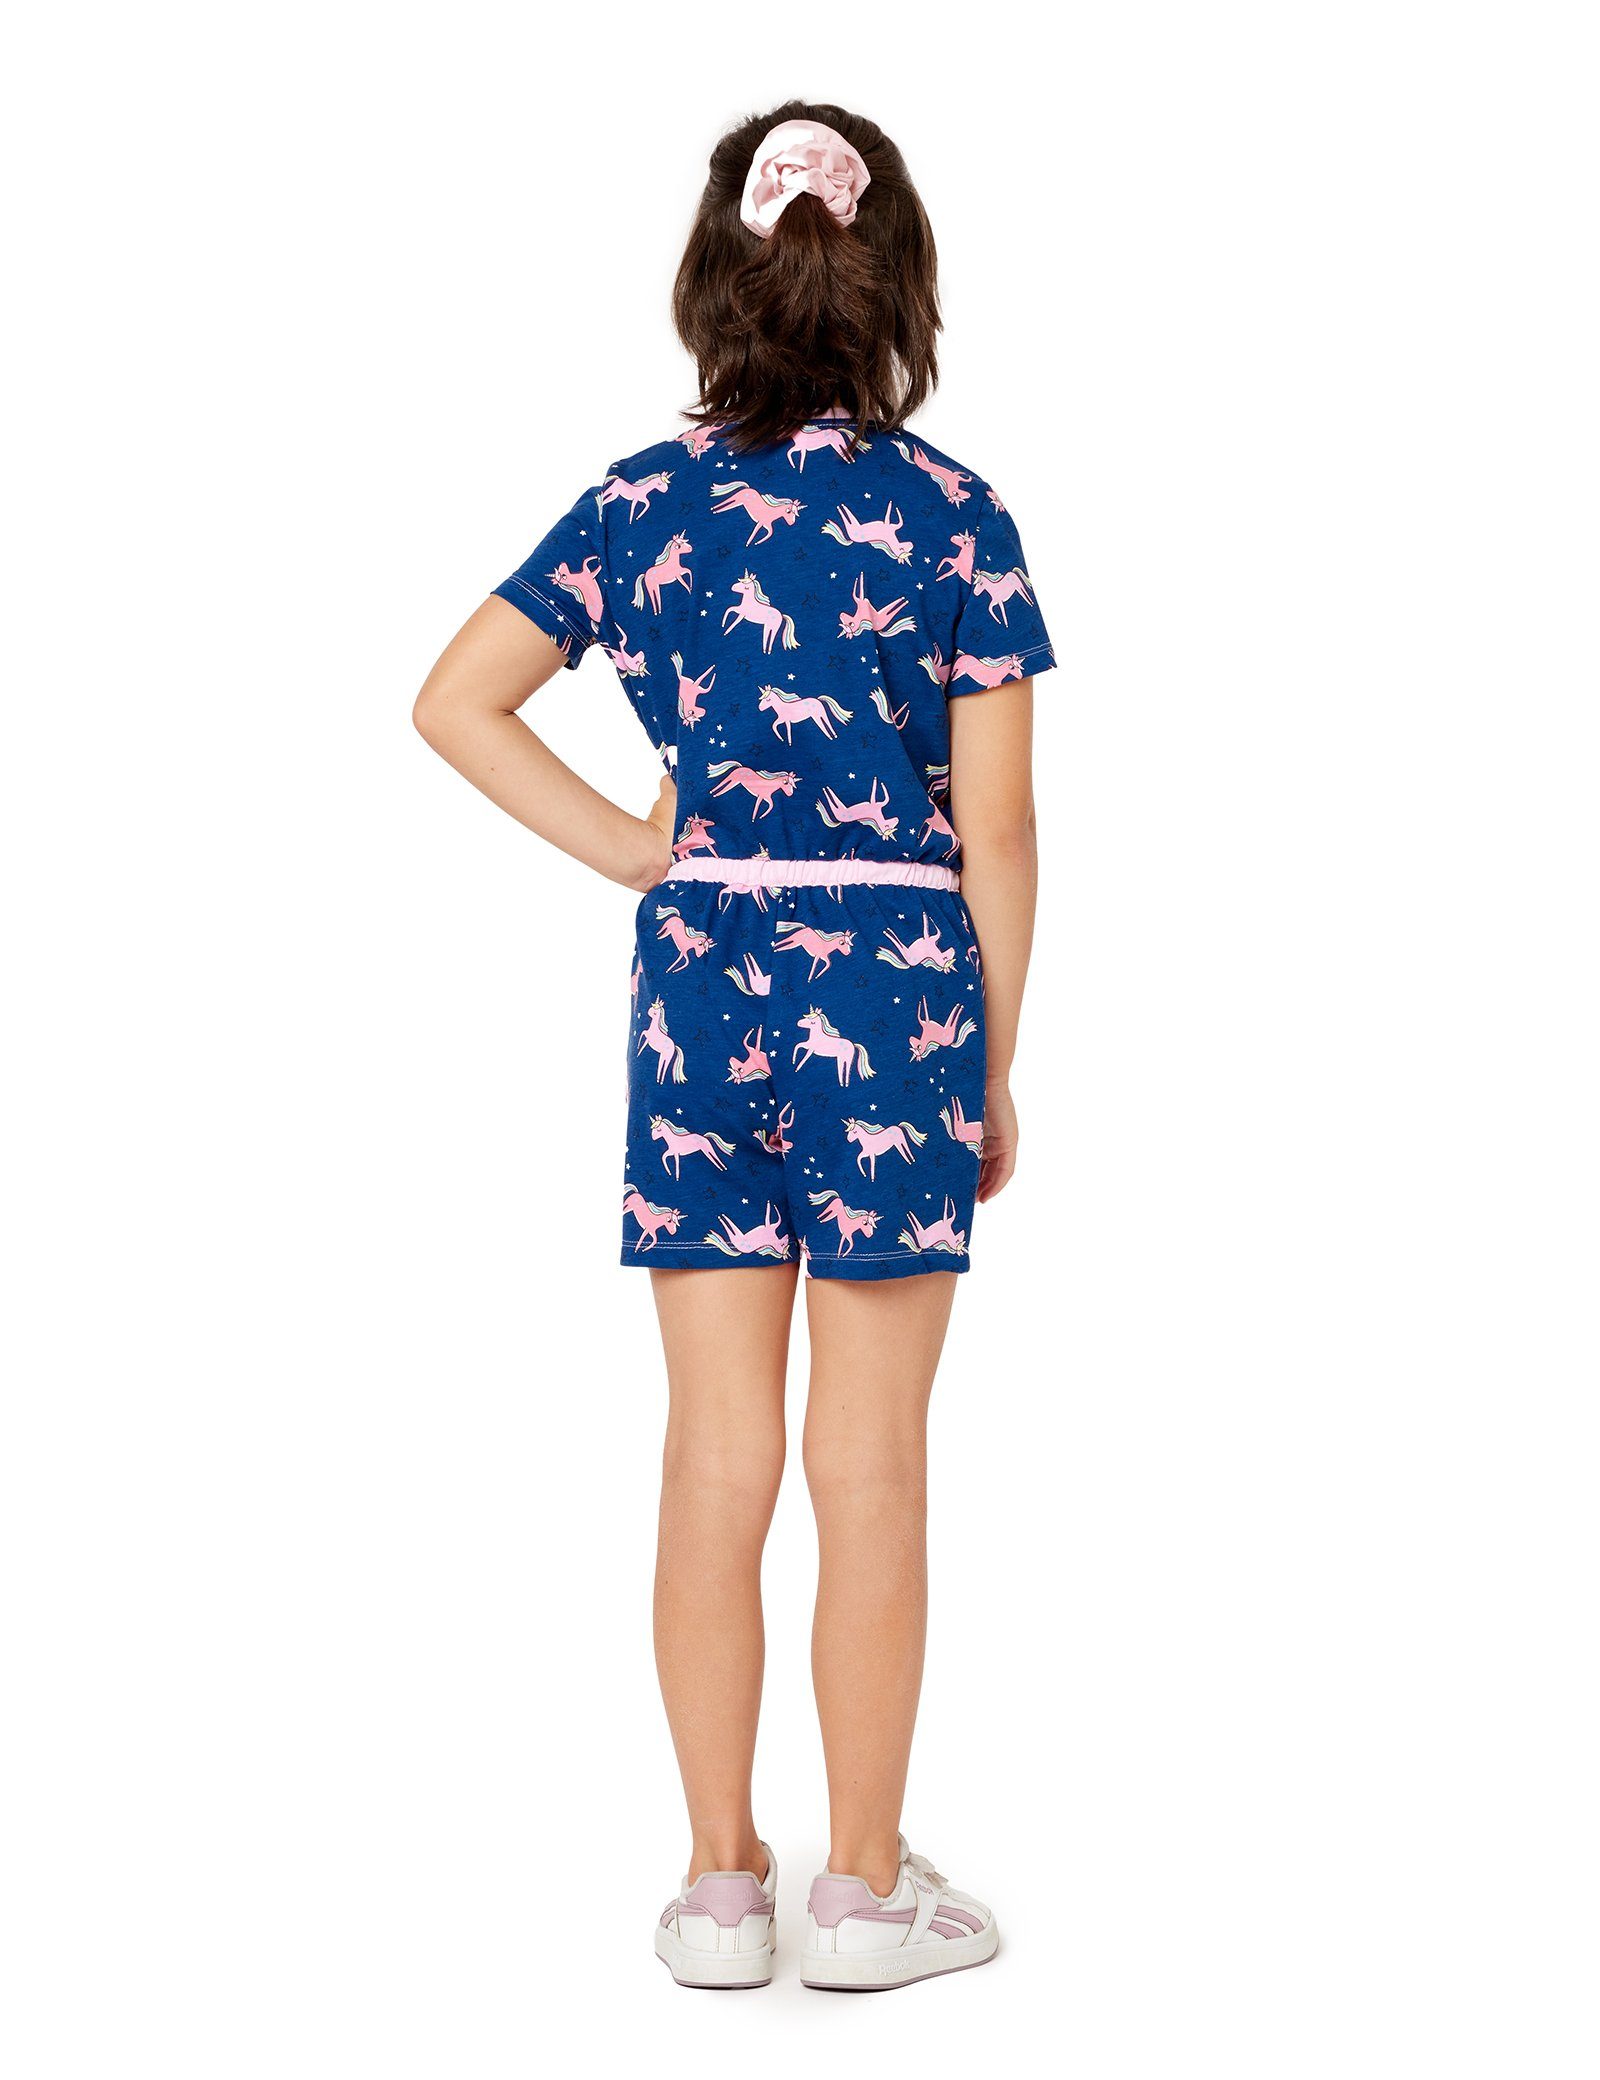 MS10-267 Short Overall Merry Marineblau/Einhorn Schlafanzug Schlafanzug Mädchen Style